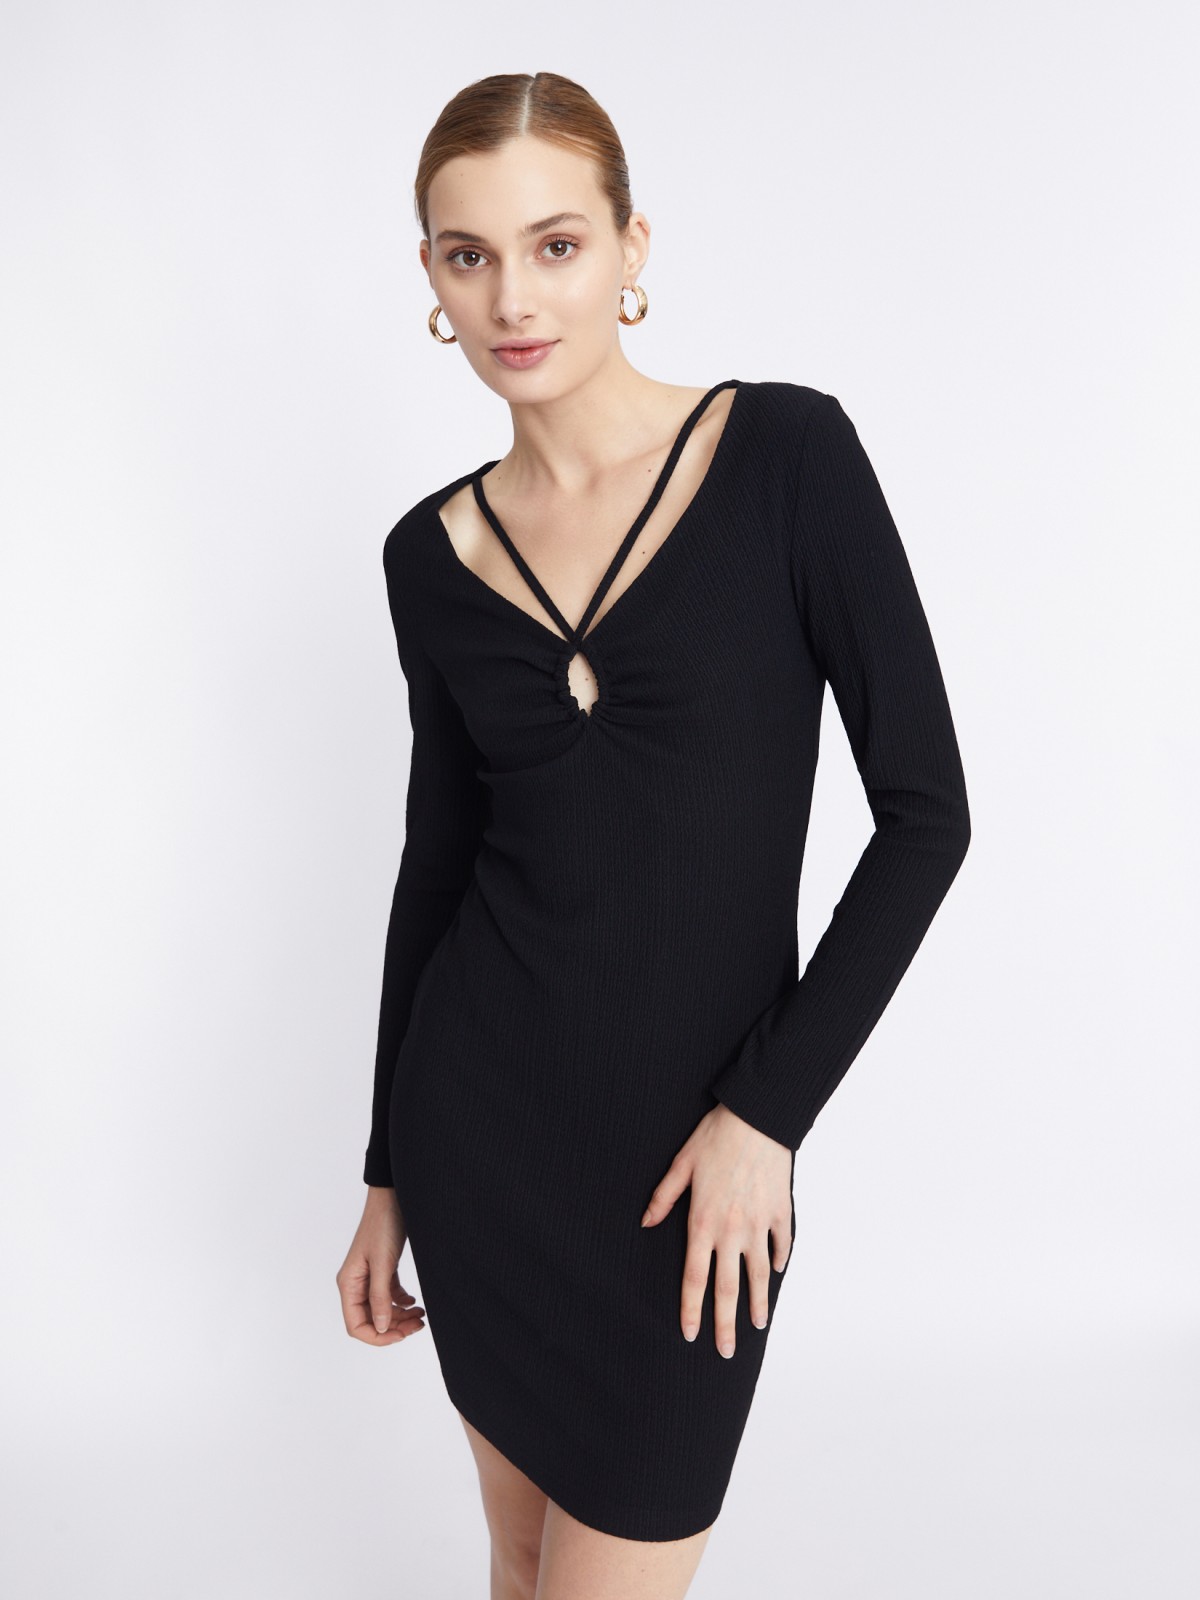 Трикотажное платье длины мини с акцентным вырезом zolla 223338159151, цвет черный, размер XS